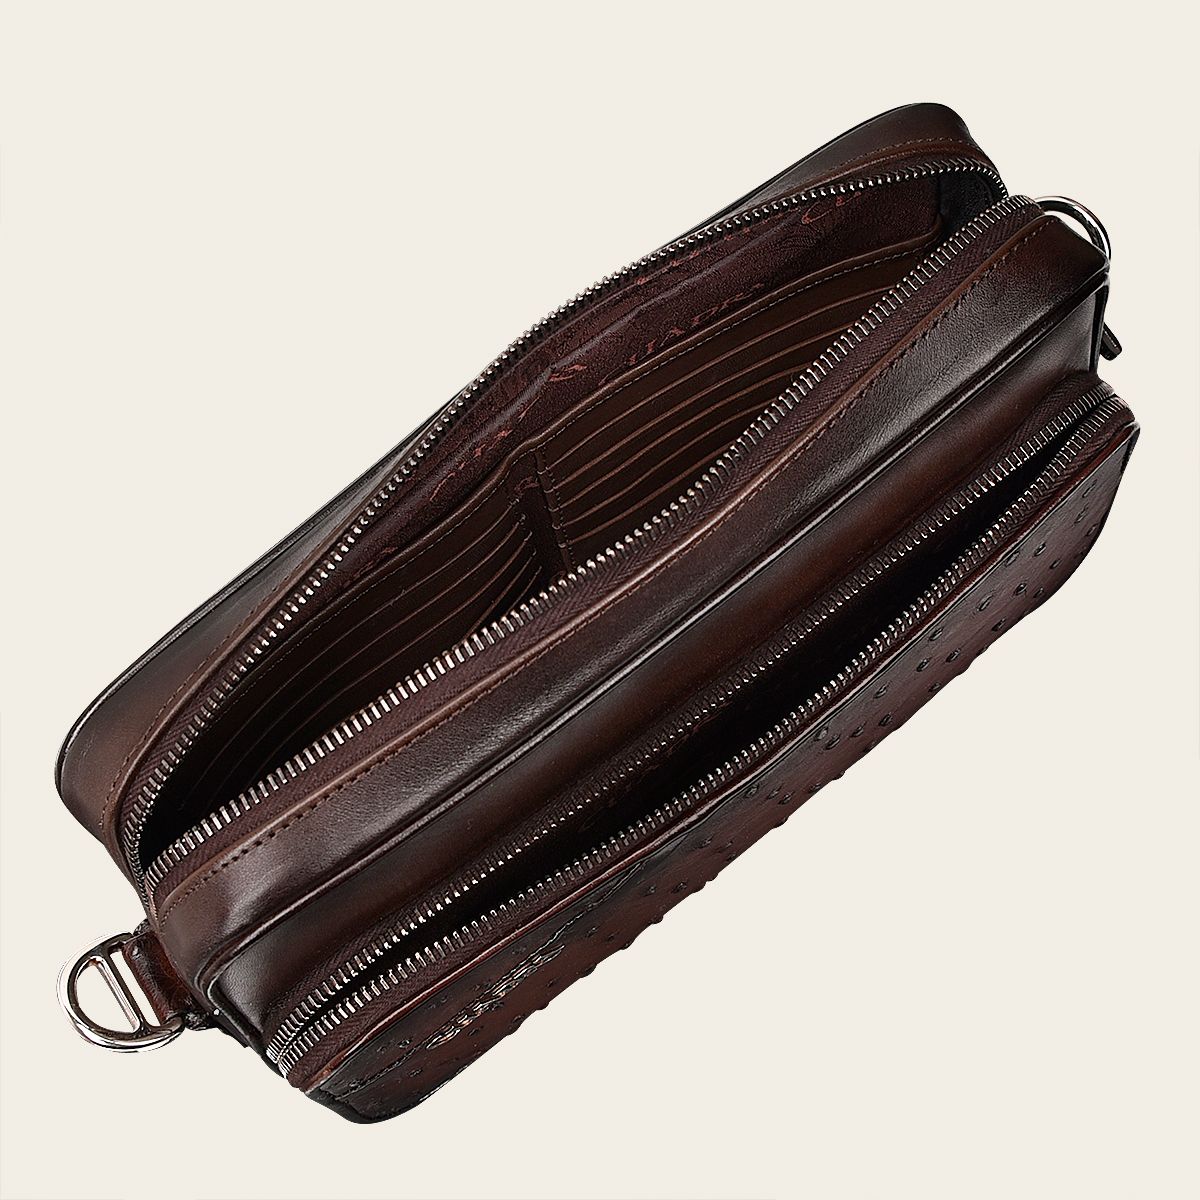 Dark brown exotic leather shoulder bag